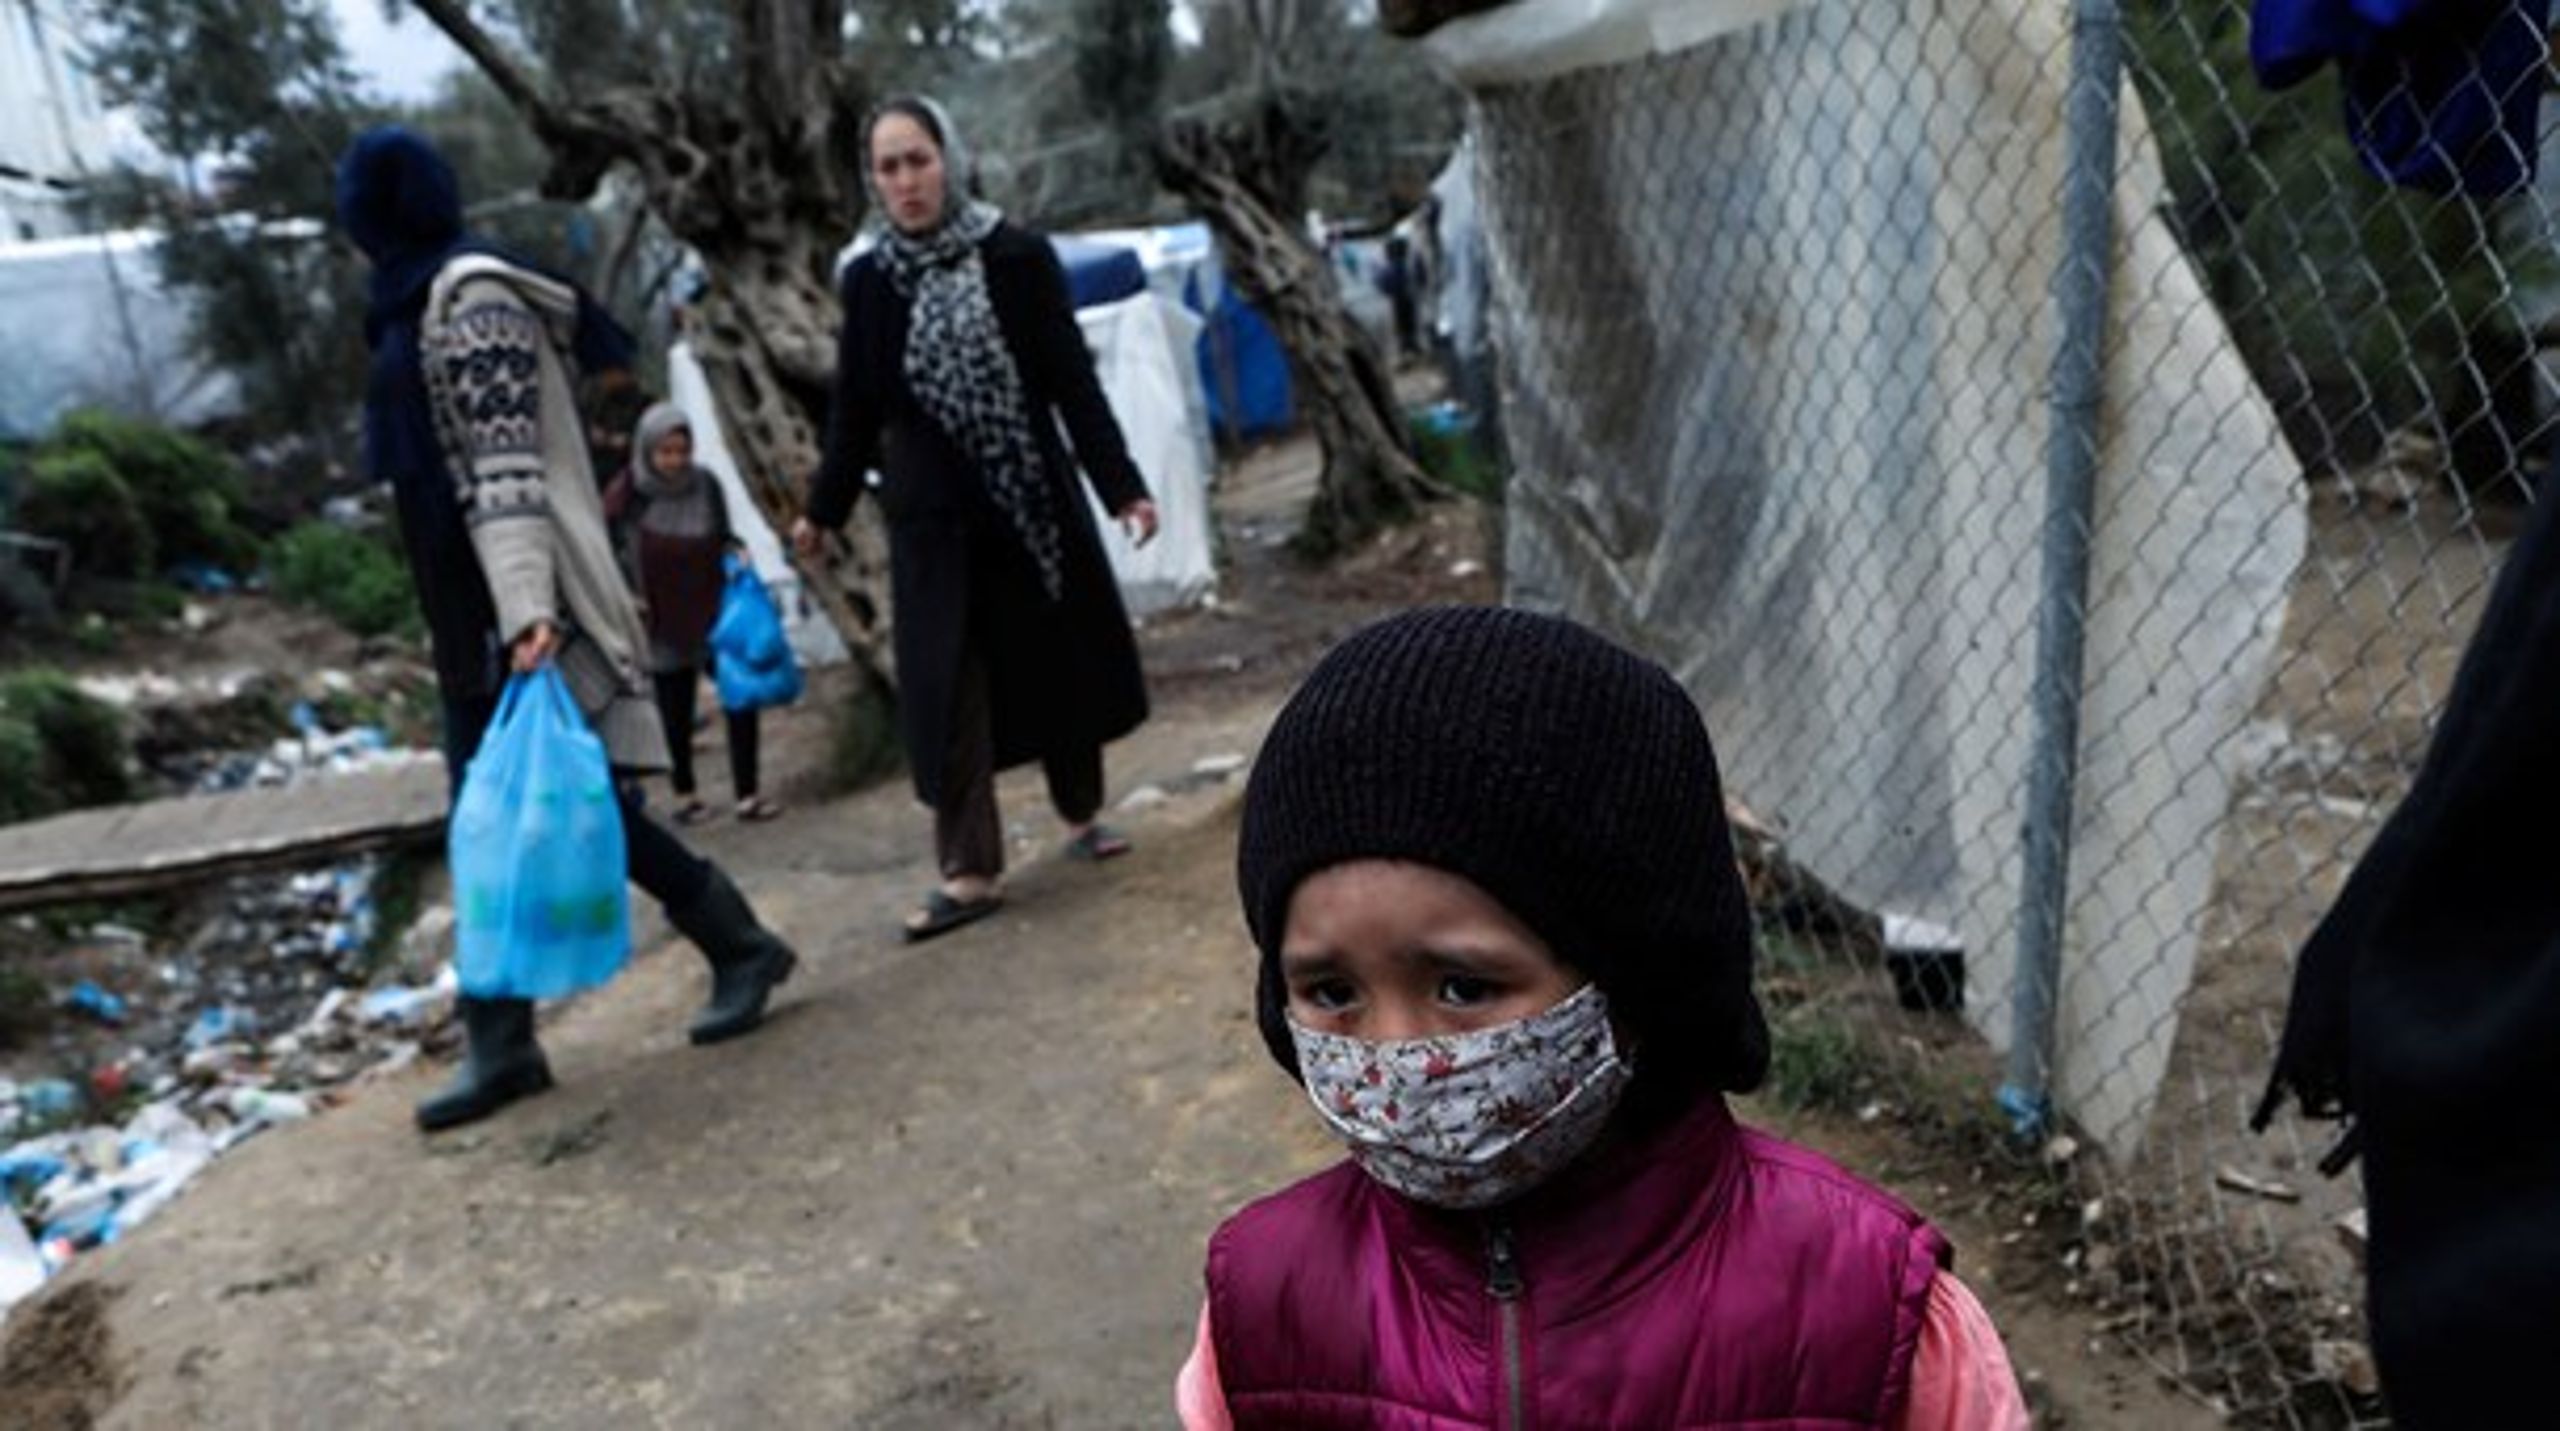 Efter Enhedslistens mening bør Danmark tage mindst 500 børn og syge fra den ekstremt overfyldte flygtningelejr Moria på den græske ø Lesbos, skriver Christian Juhl.